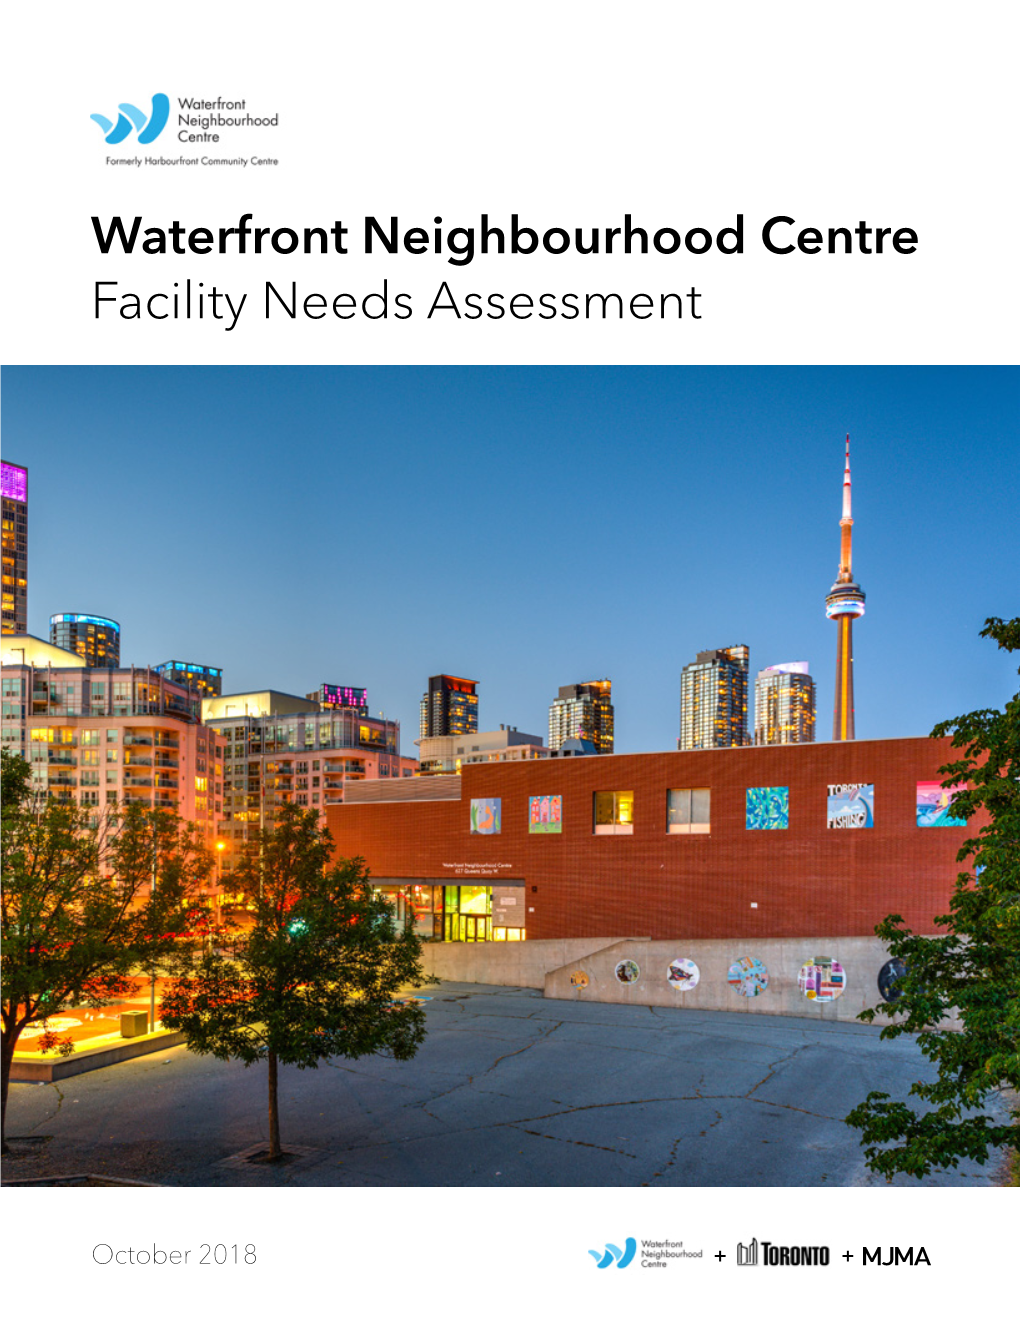 Waterfront Neighbourhood Centre Facility Needs Assessment